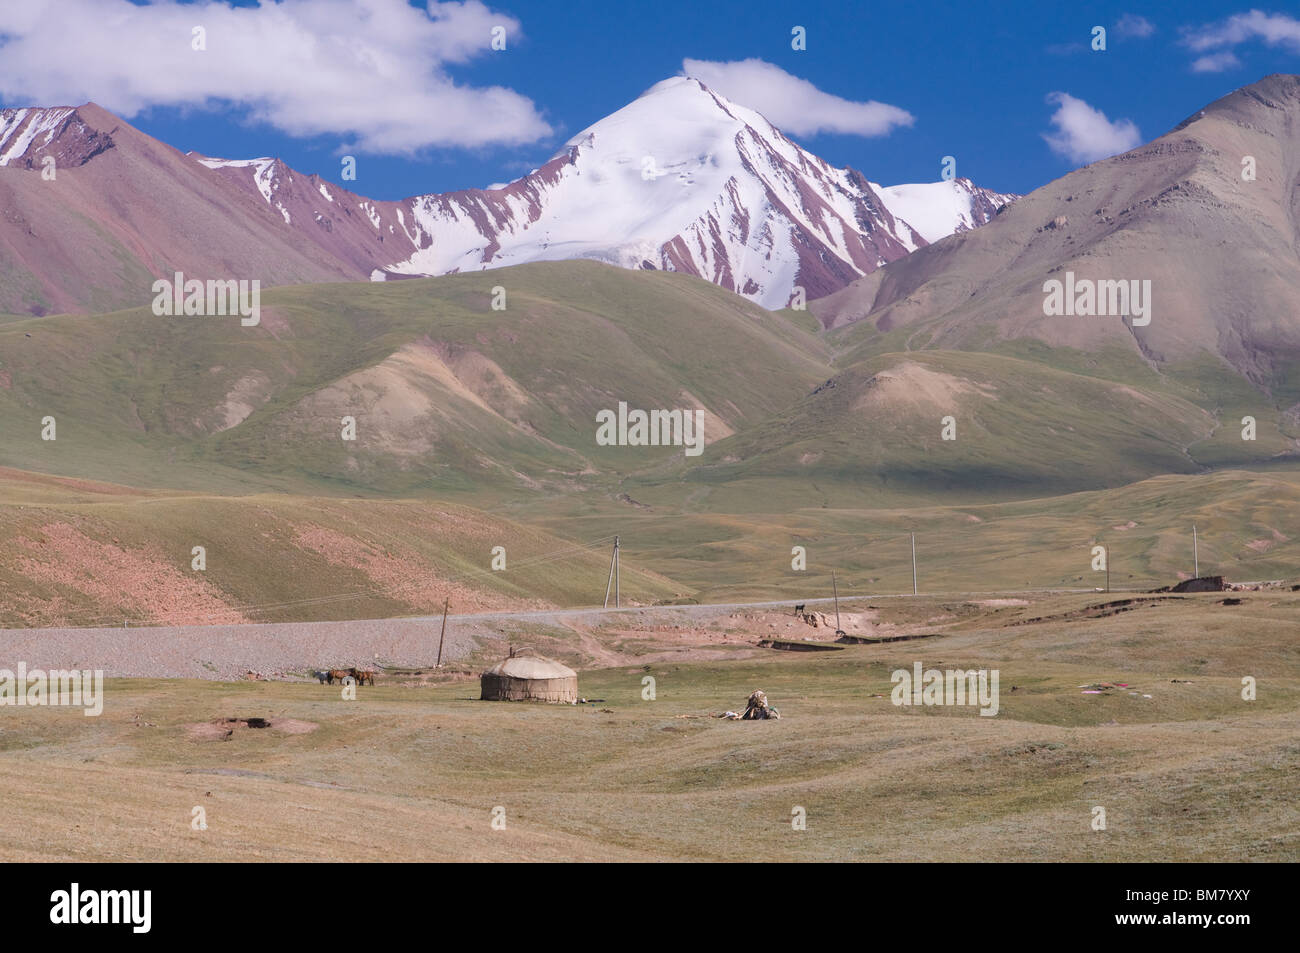 Mountains of Sary Tash, Kyrgyzstan Stock Photo